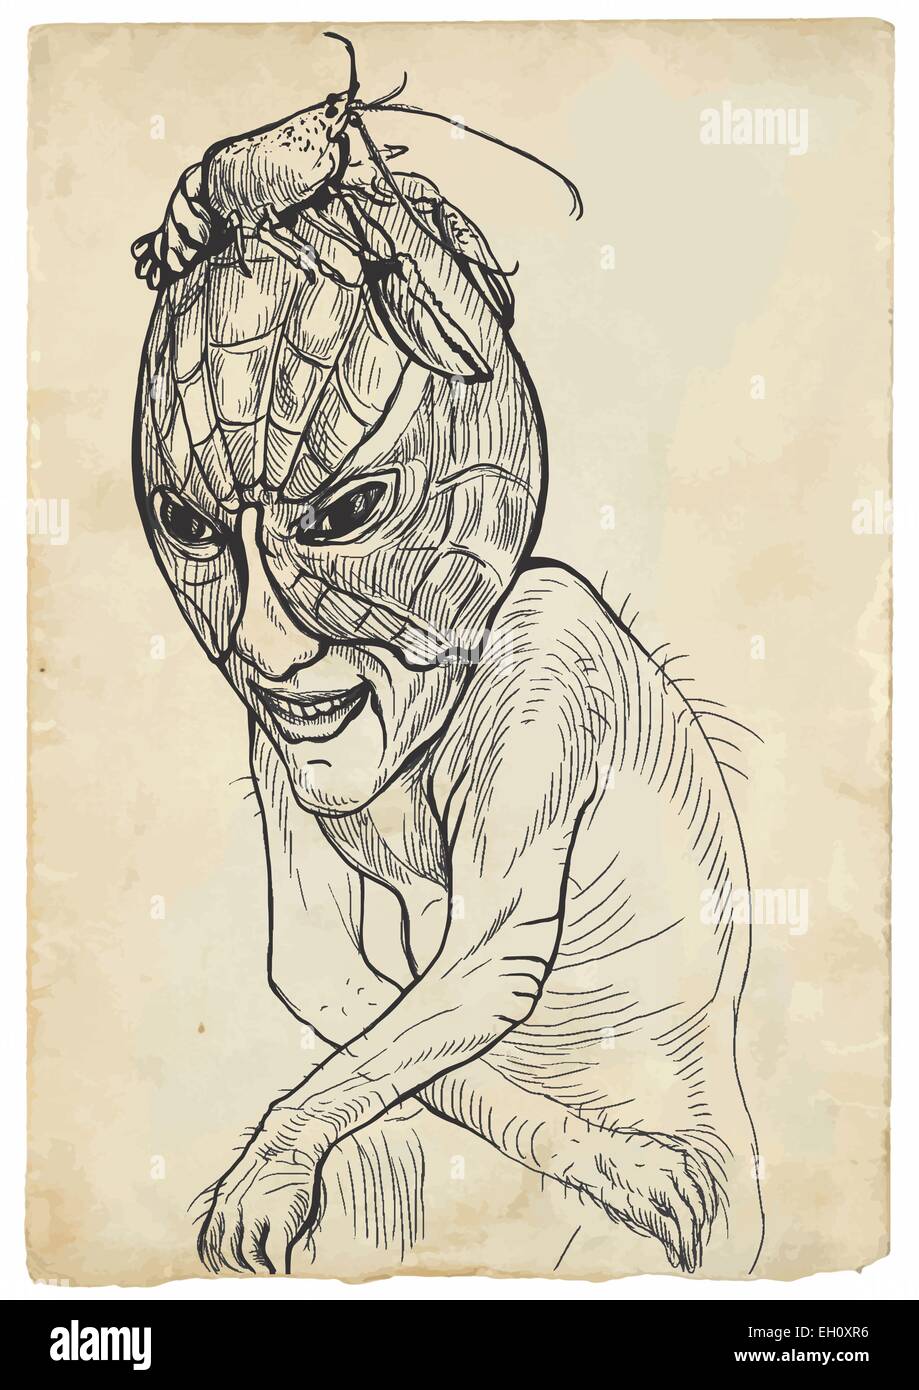 Eine Vektor Illustration Von Hand Gezeichnet Traurige Monster Mit Hummer Auf Dem Kopf Stock Vektorgrafik Alamy